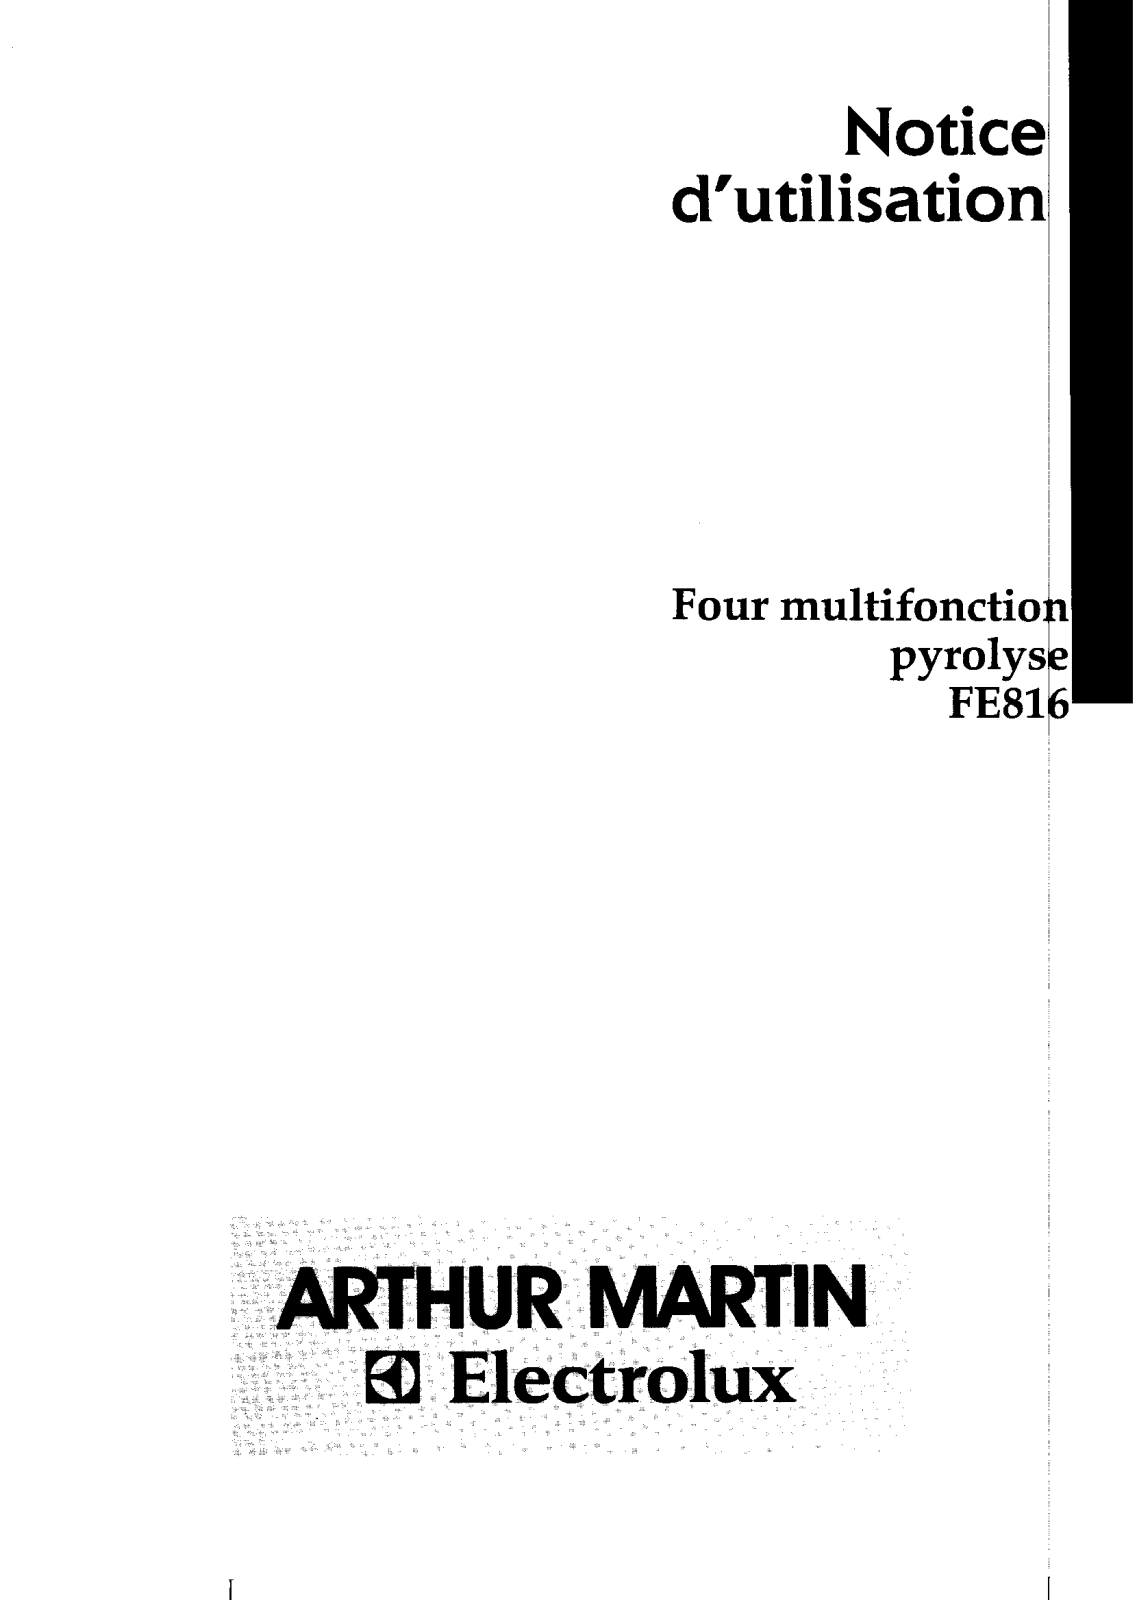 Arthur martin FE816 User Manual